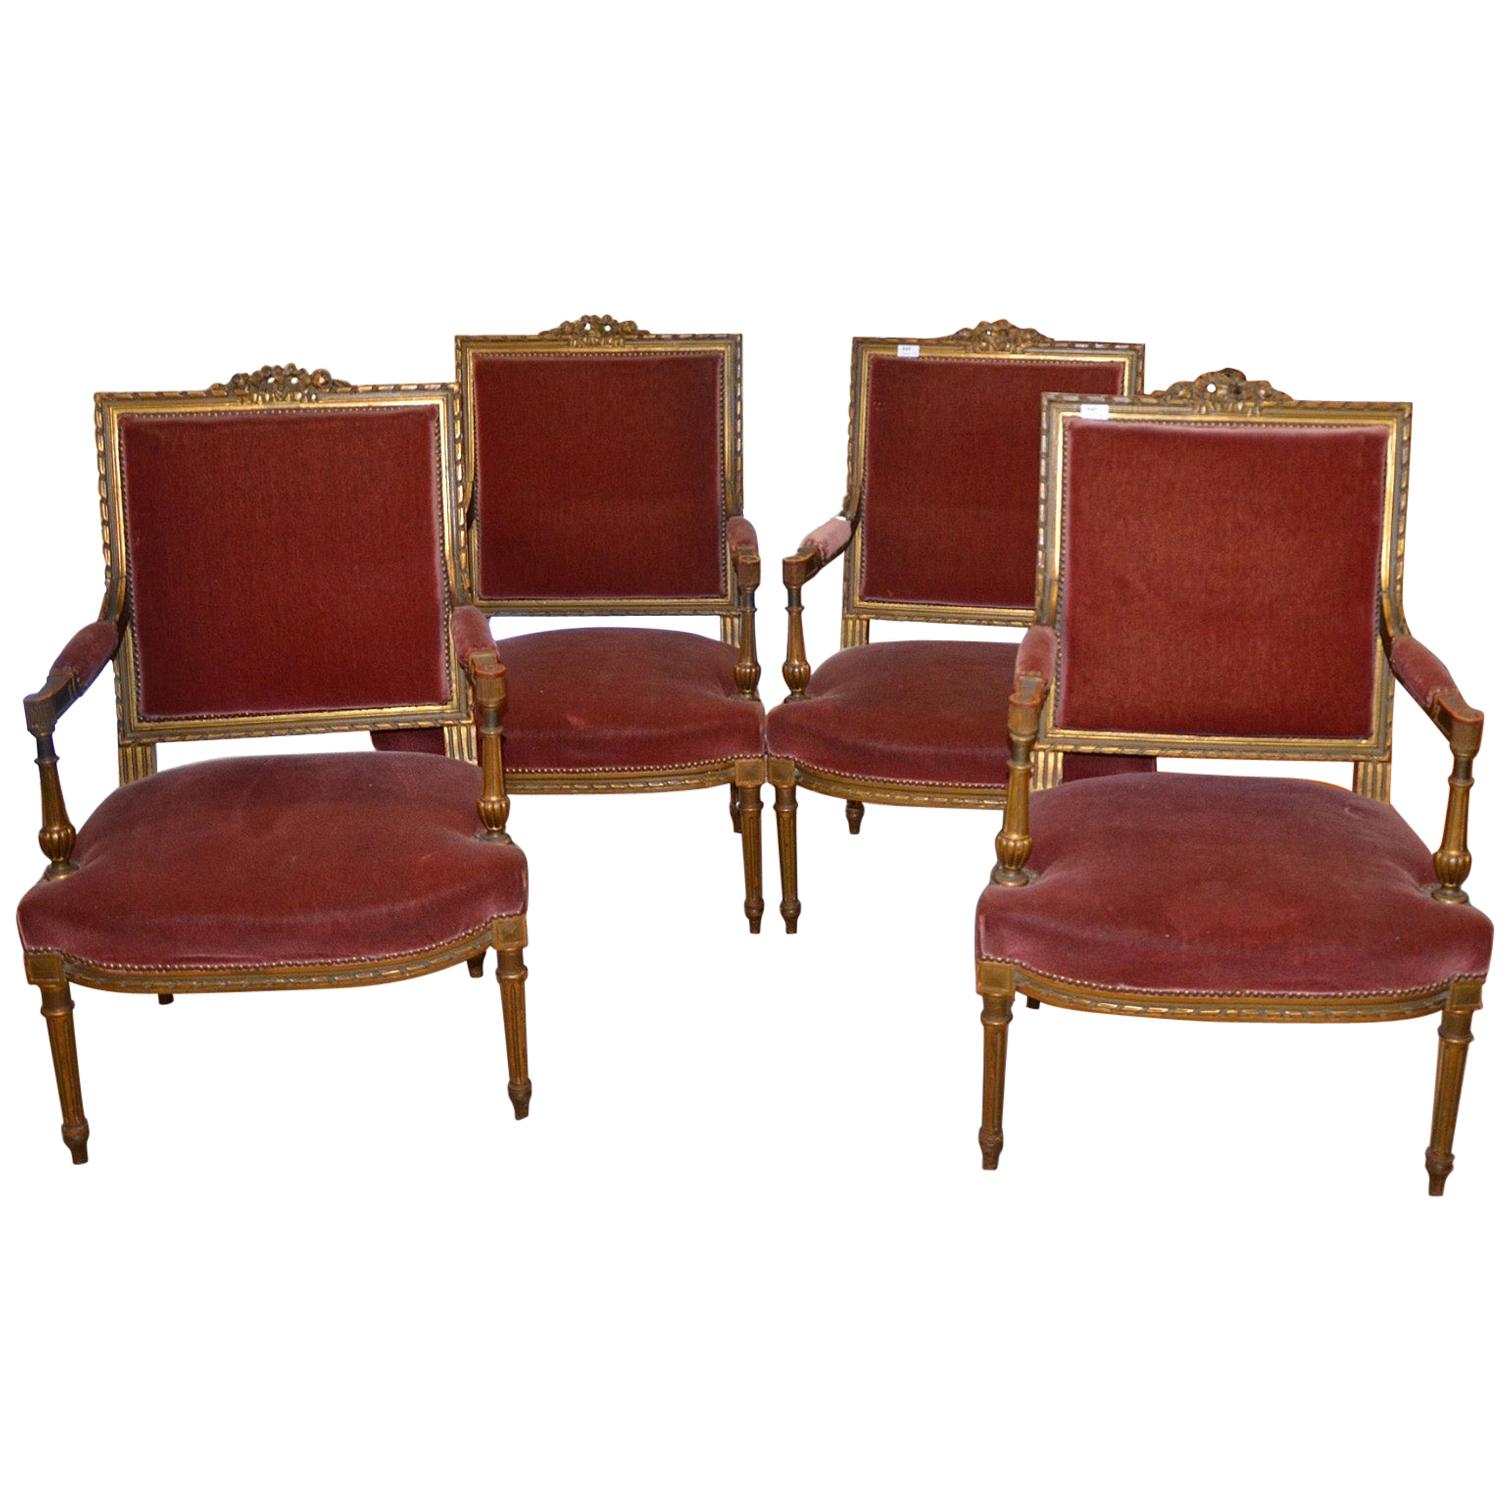 4 Louis XVI Style Chairs, Napoleon III Period, Partially Gilded